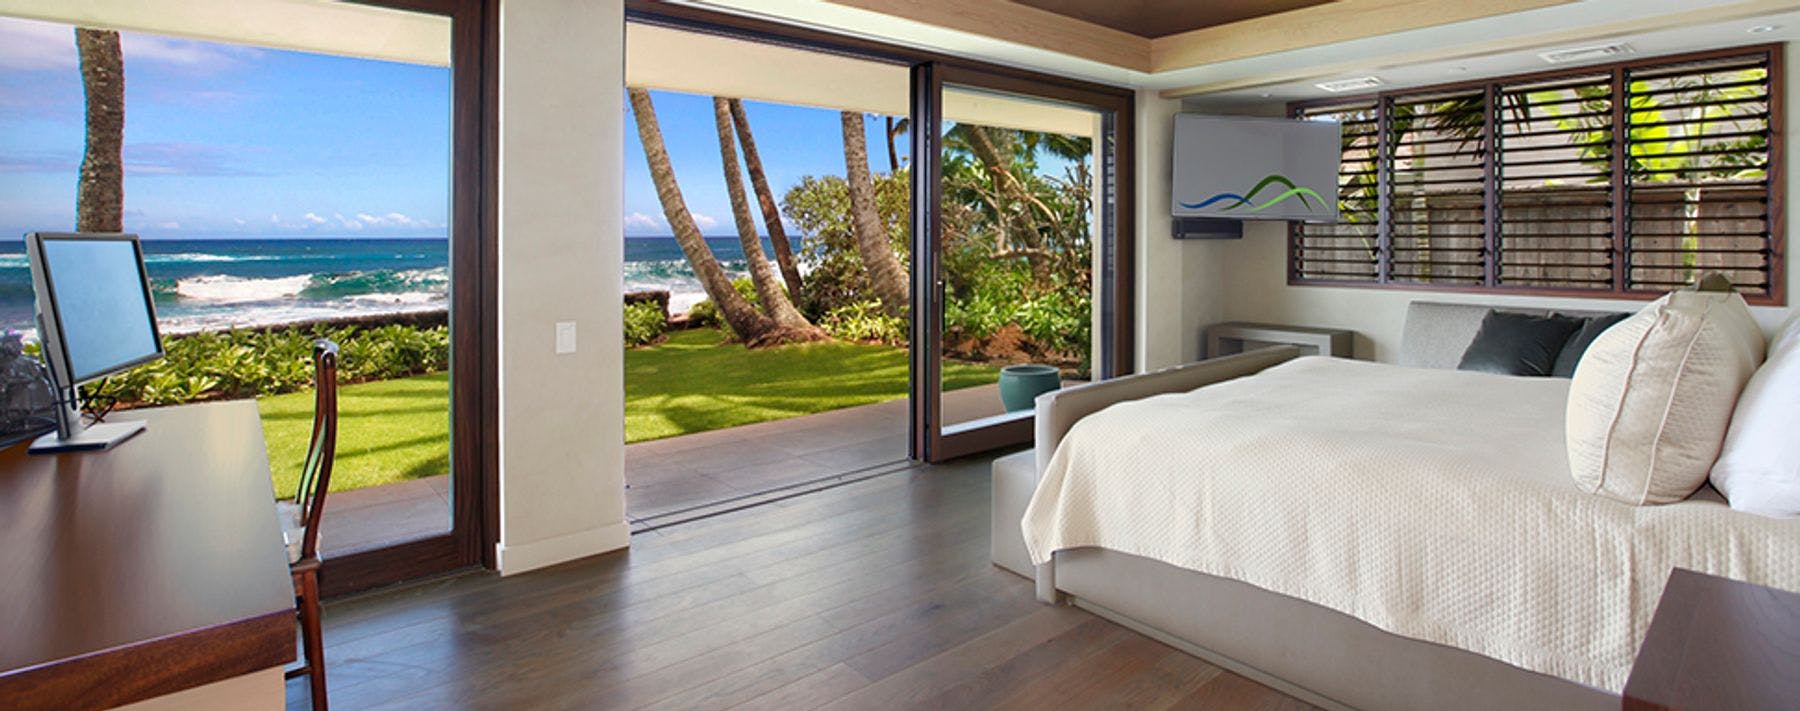 Bedroom with ocean views in Kauai